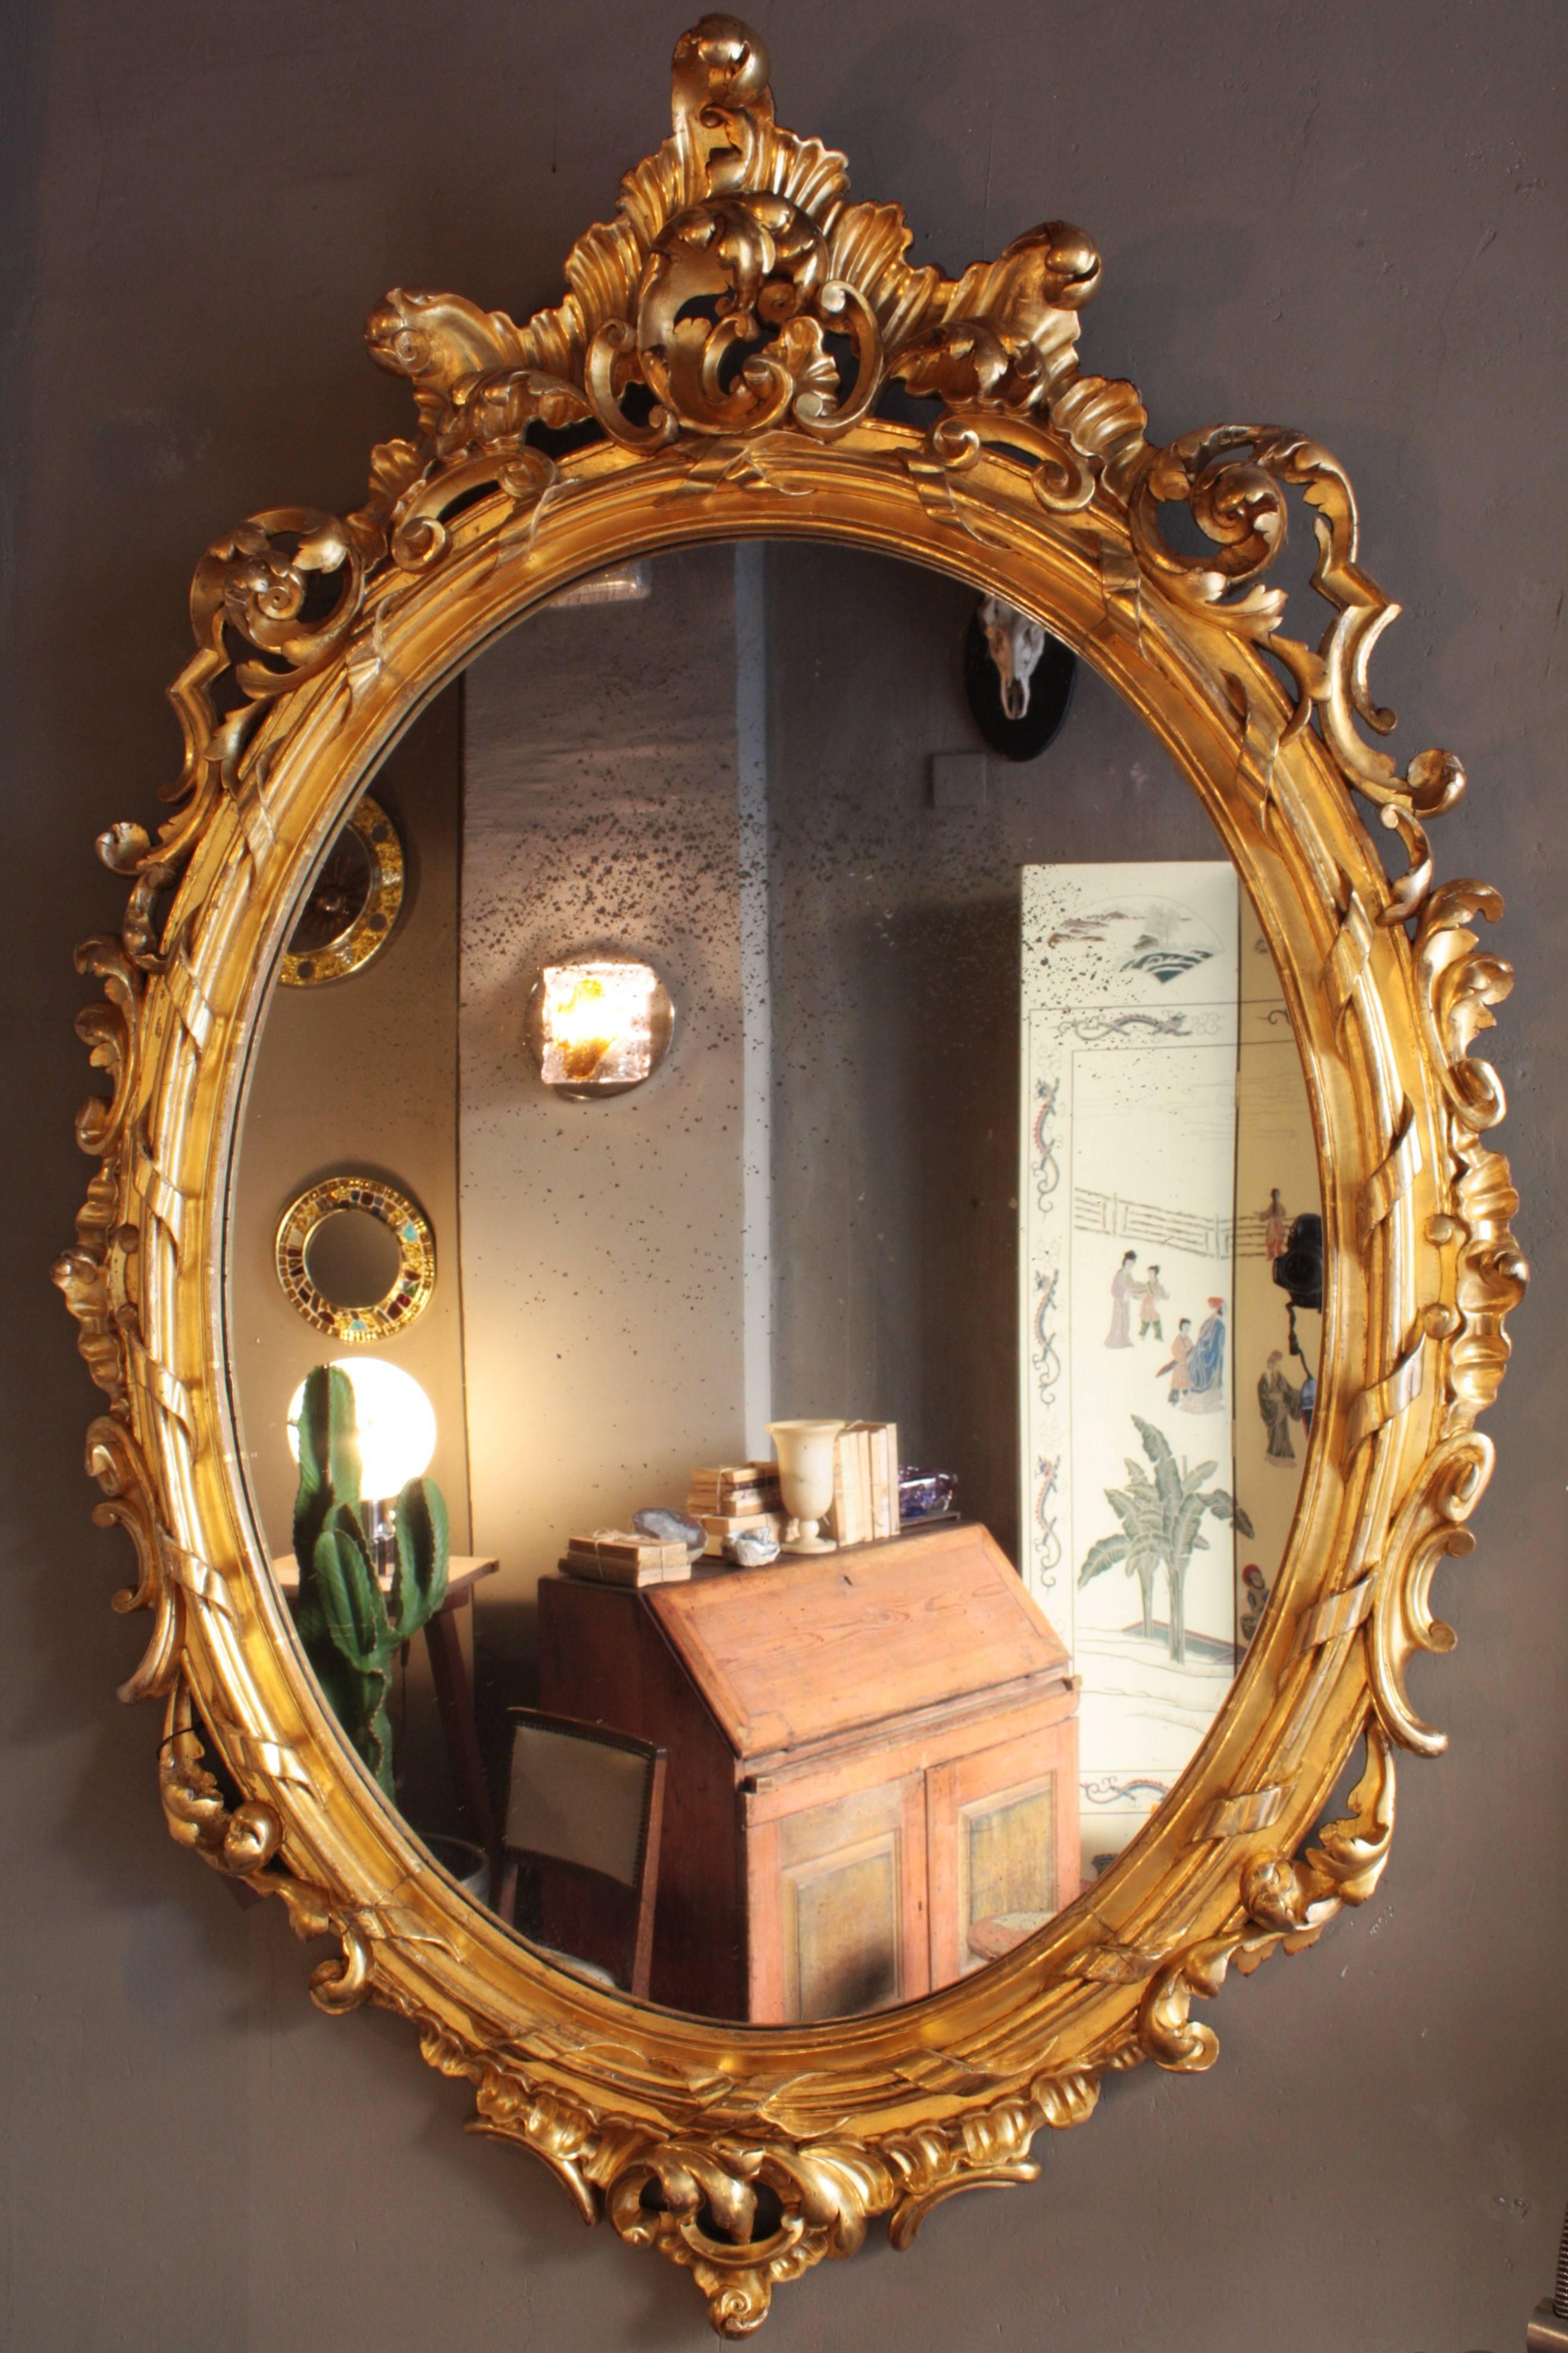 Exceptionnel miroir palatial de style Rococo finement sculpté avec finition à la feuille d'or dans une très grande taille. France, 1850.
Un superbe exemple de cadre doré de style rococo.
Le cadre présente une belle décoration sculptée de feuilles